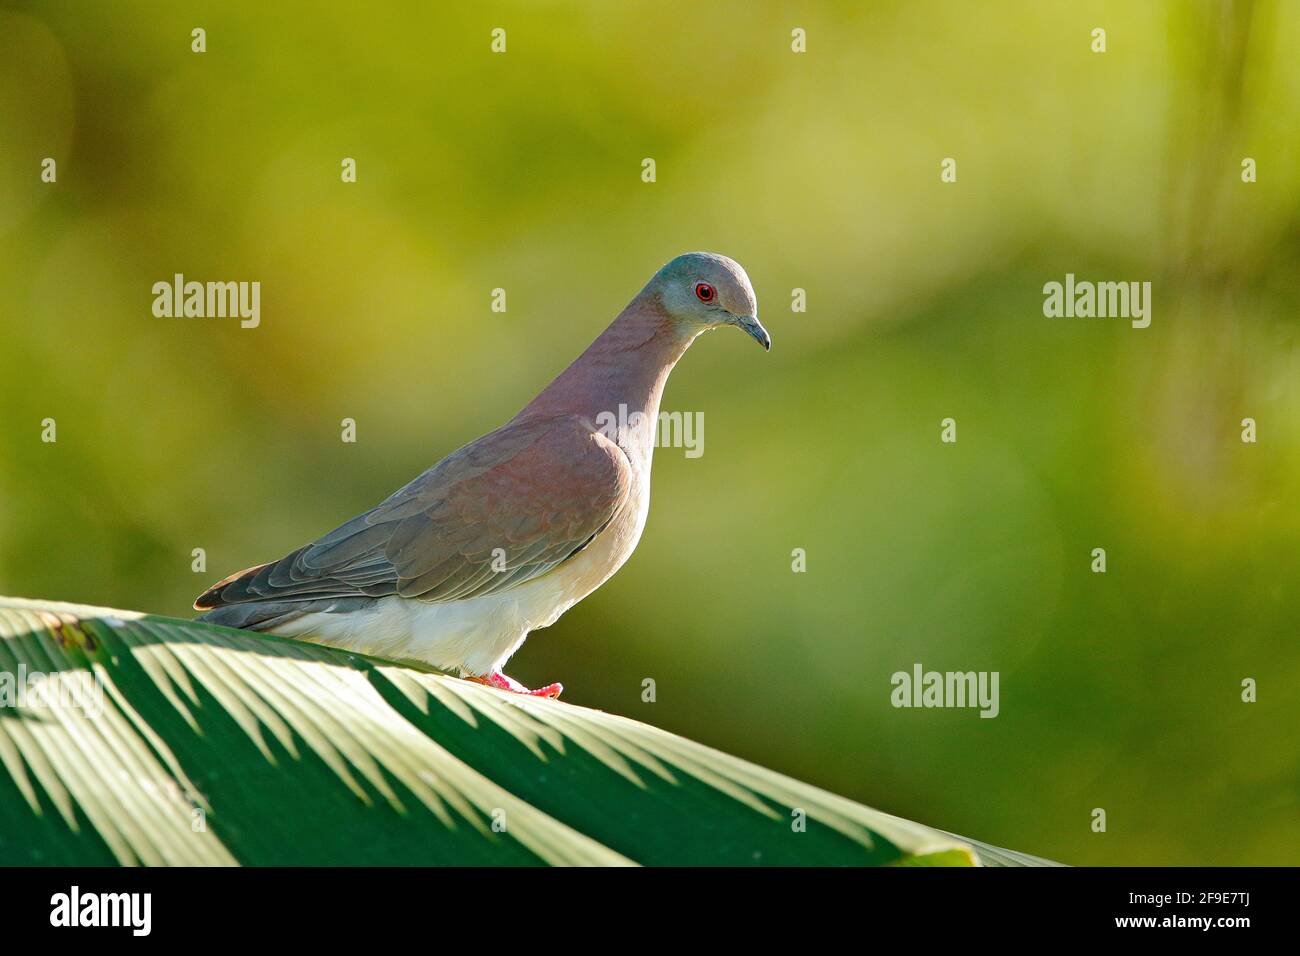 Patagioenas cayennensis, Pale-vented Pigeon, Vogel aus Arnos Vale, Trinidad und Tobago. Taube sitzt auf der grünen Palme verlassen. Wildtierszene von na Stockfoto